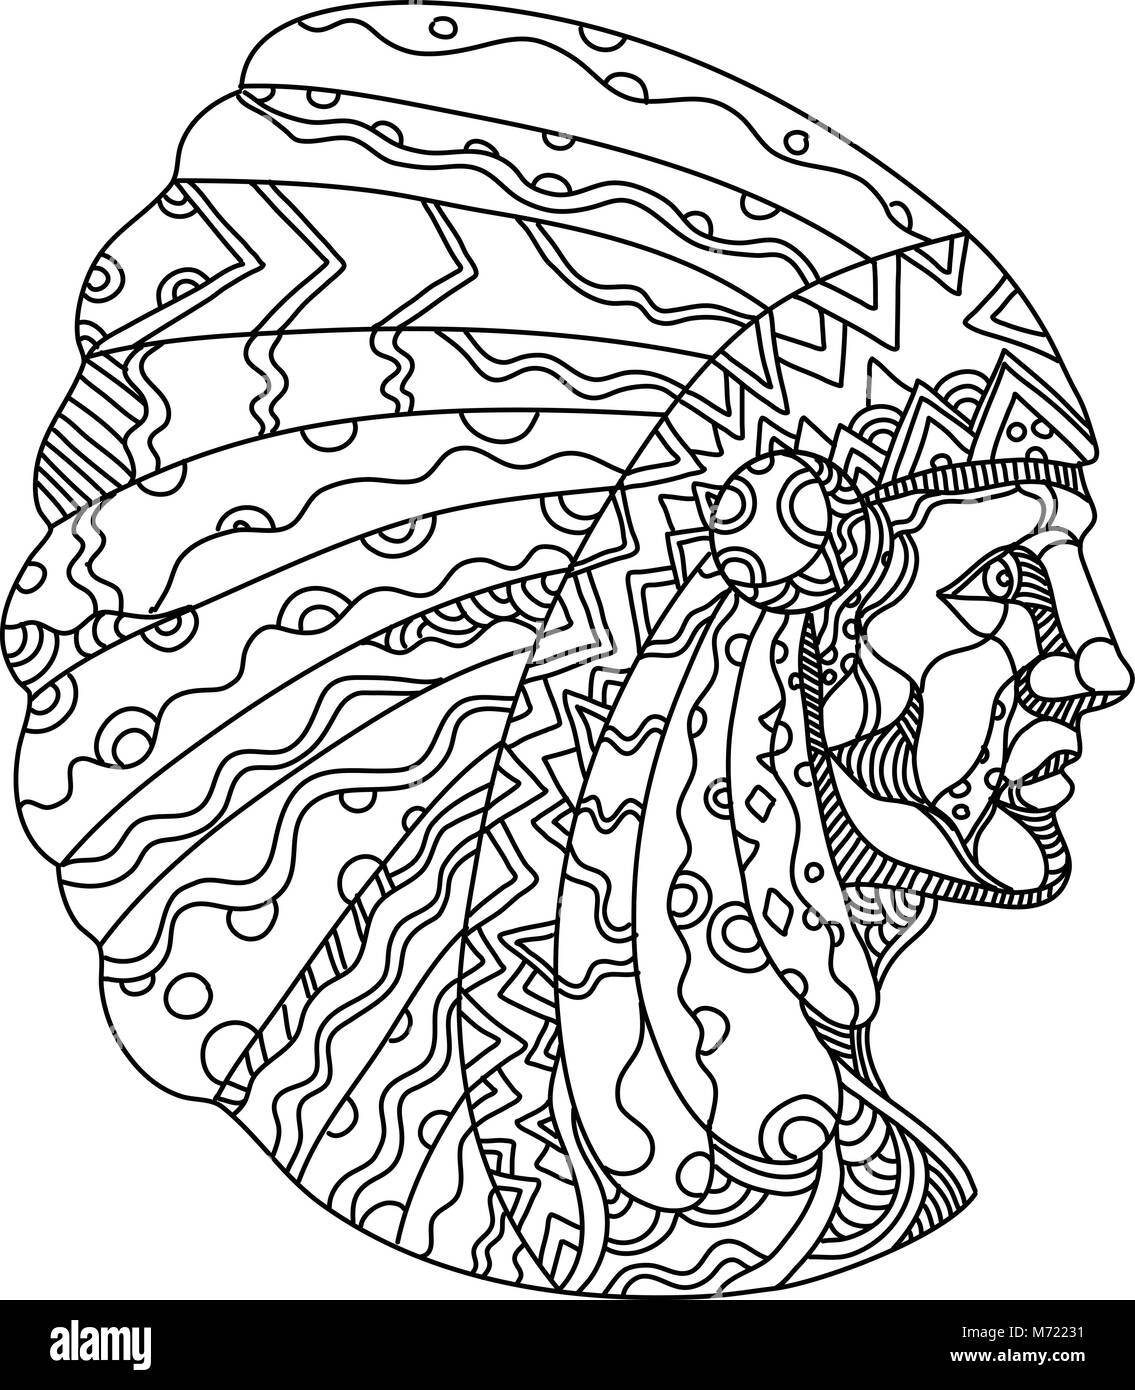 Doodle art Illustration von einem amerikanischen Ureinwohner, Indianer, indische oder indigenen Amerikaner, tragen War bonnet. Stock Vektor